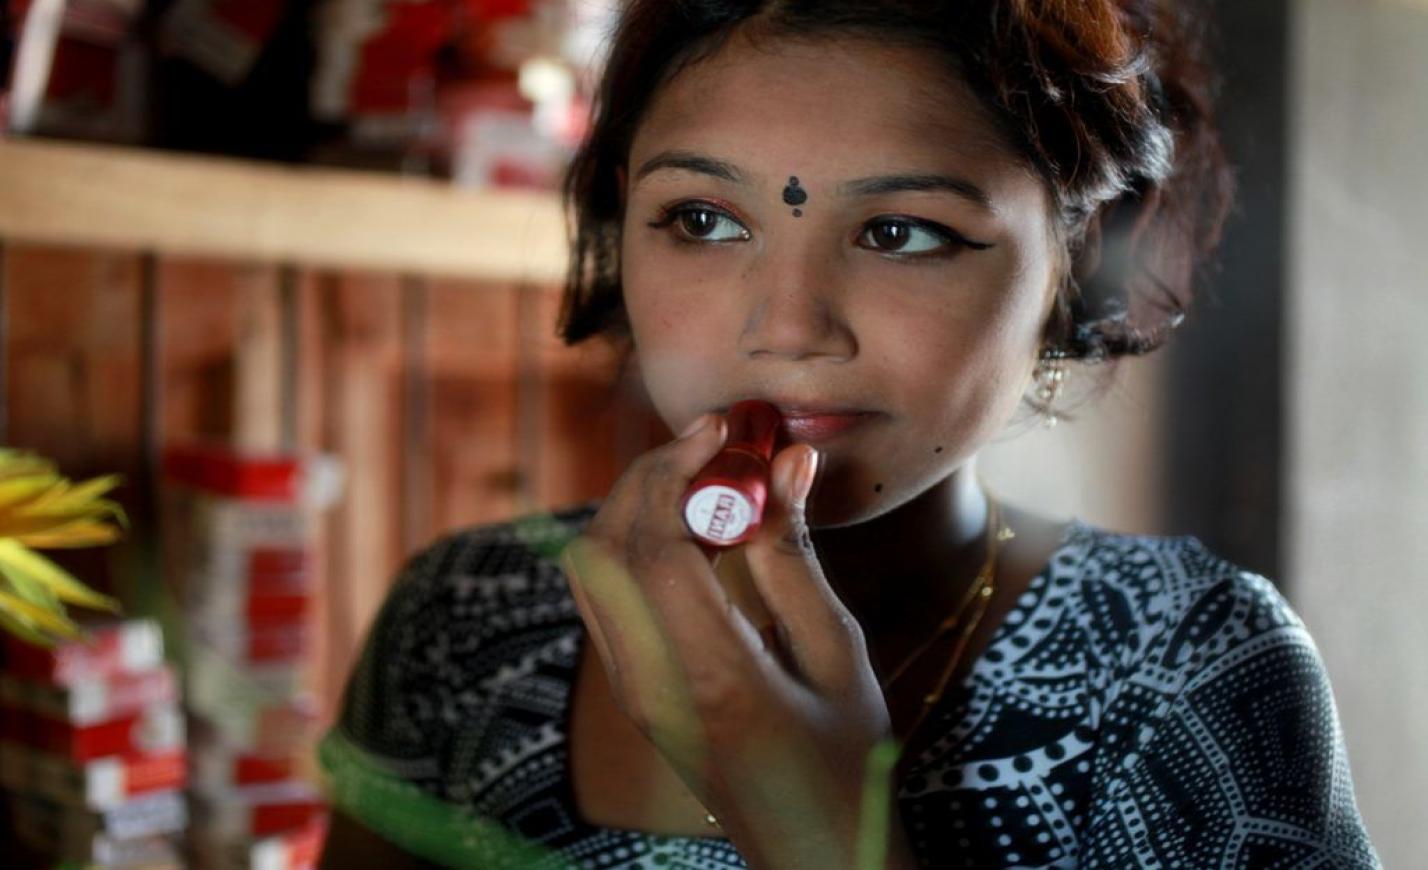 Prostituáltak tízezrei kapnak élelmiszersegélyt Bangladesben